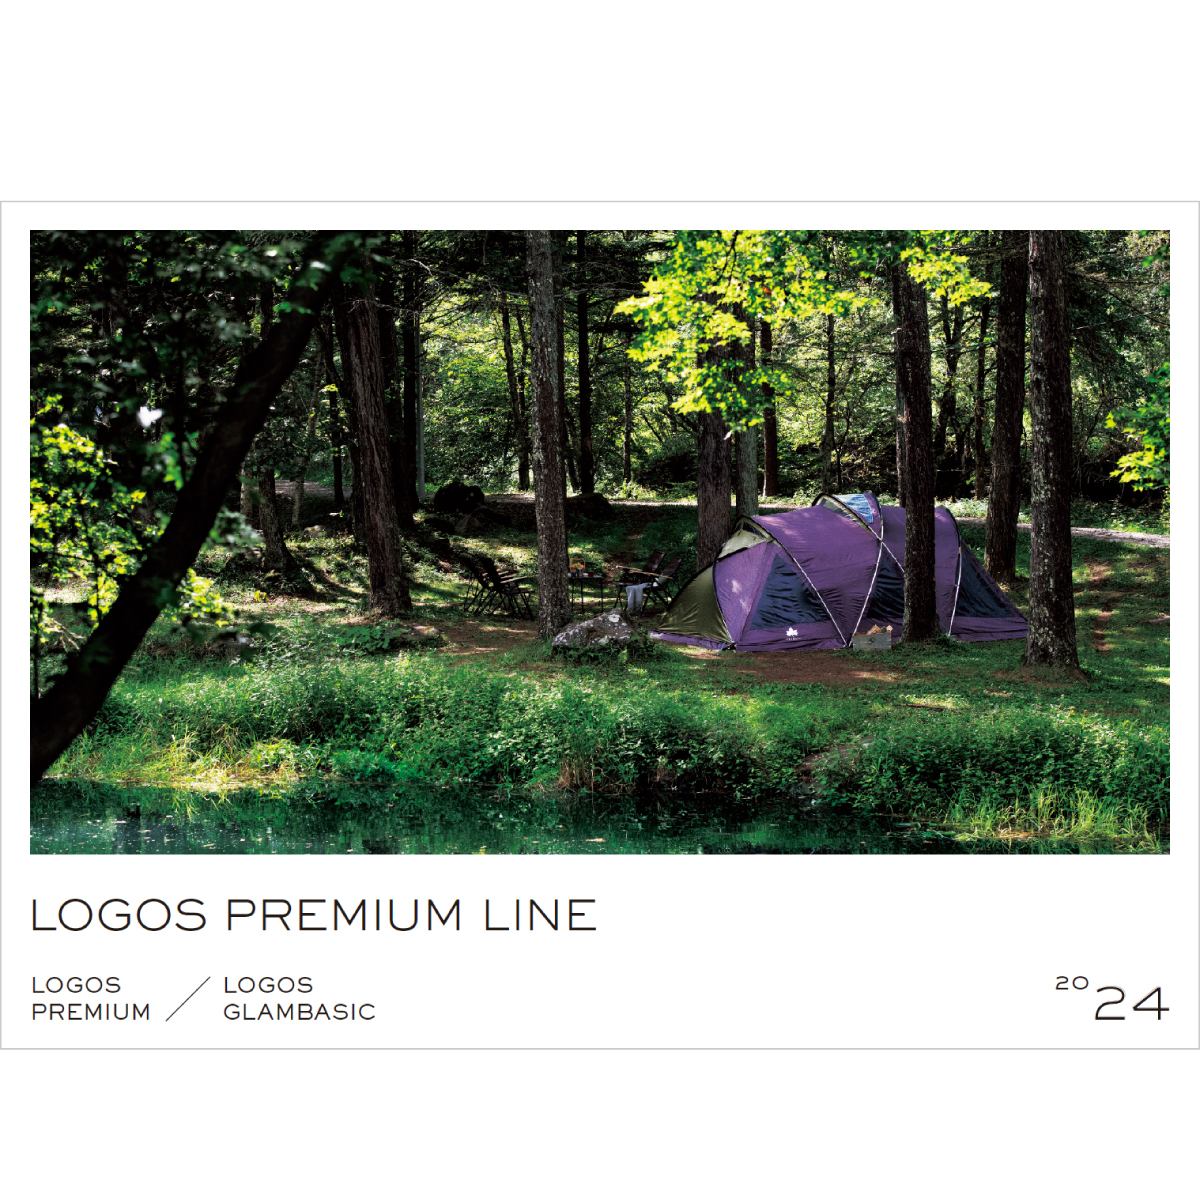 LOGOS PREMIUM LINE 2024|コレクション|カタログ|プレミアム|製品情報 ...